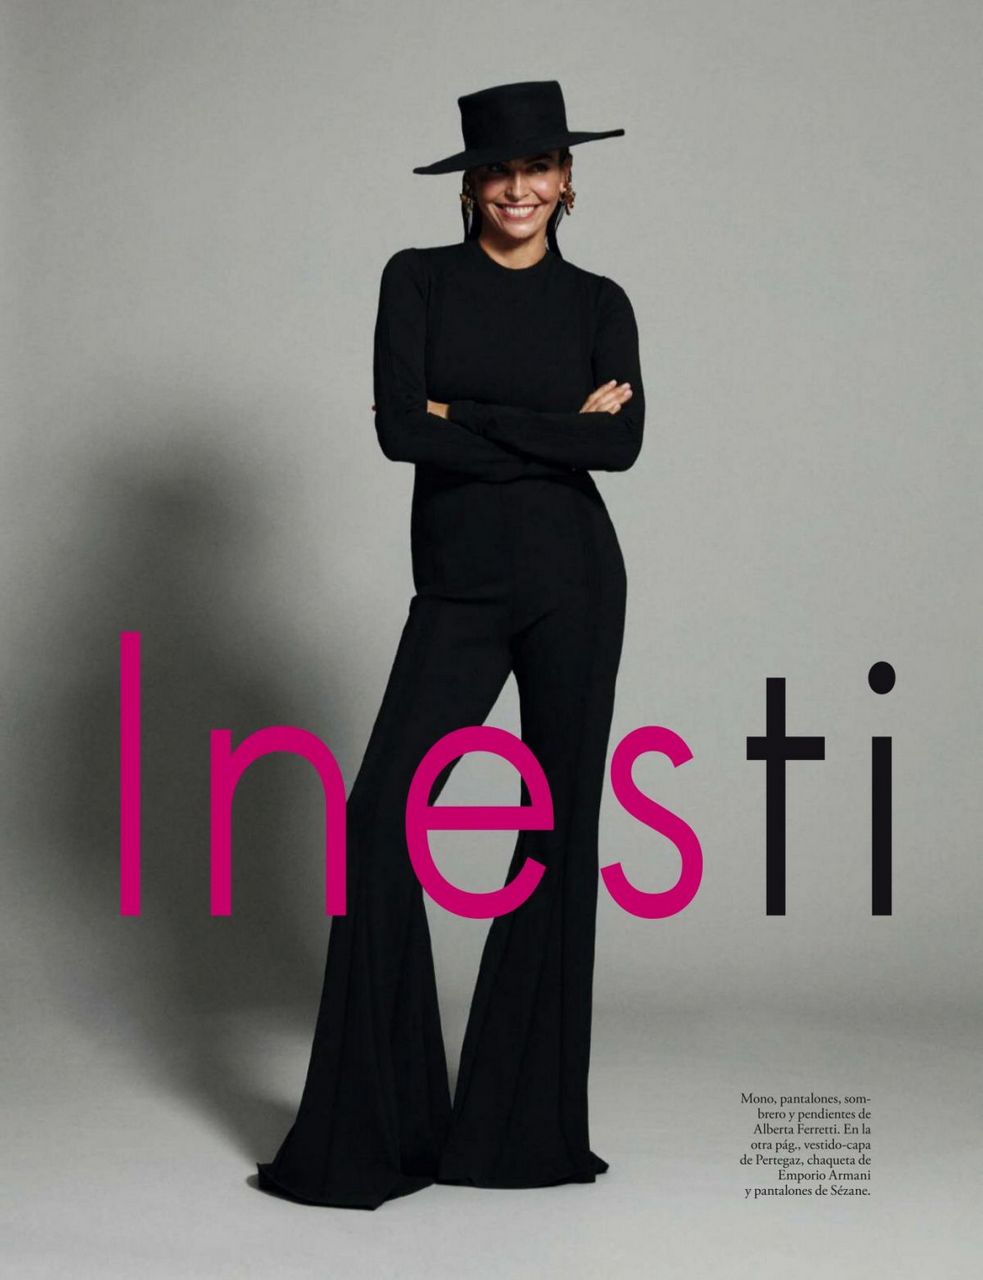 Ines Sastre Elle Magazine Spain November